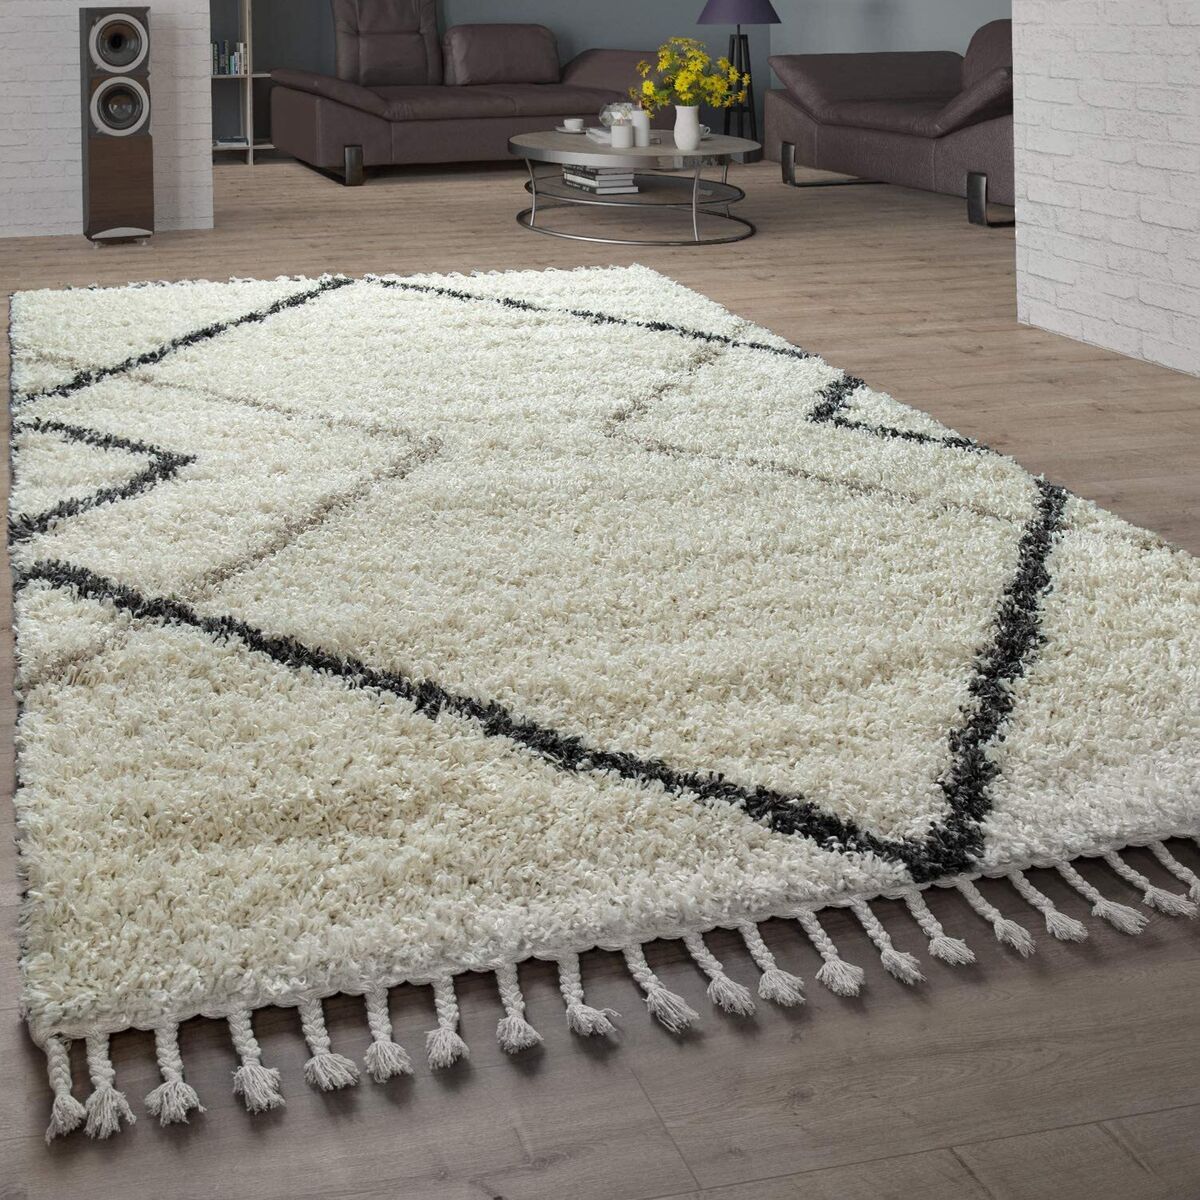 Compra alfombras grandes para salón baratas